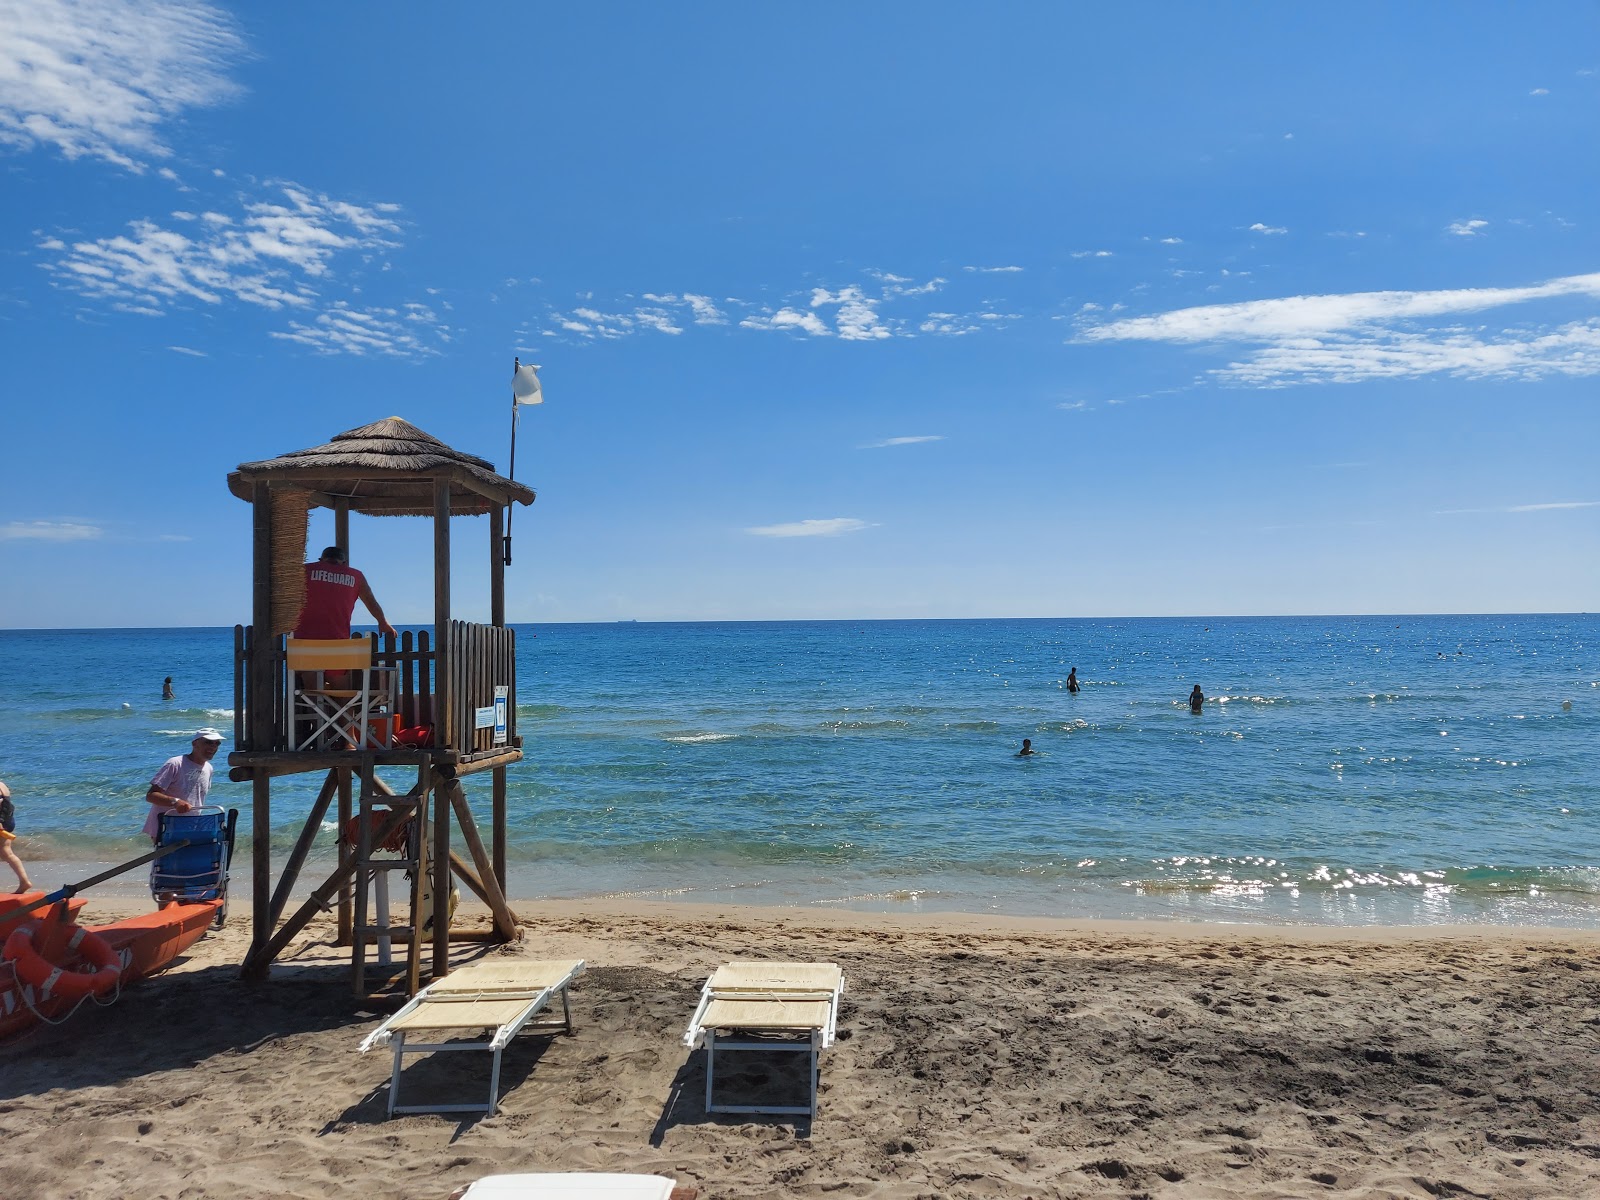 Spiaggia Laghi Alimini'in fotoğrafı - rahatlamayı sevenler arasında popüler bir yer